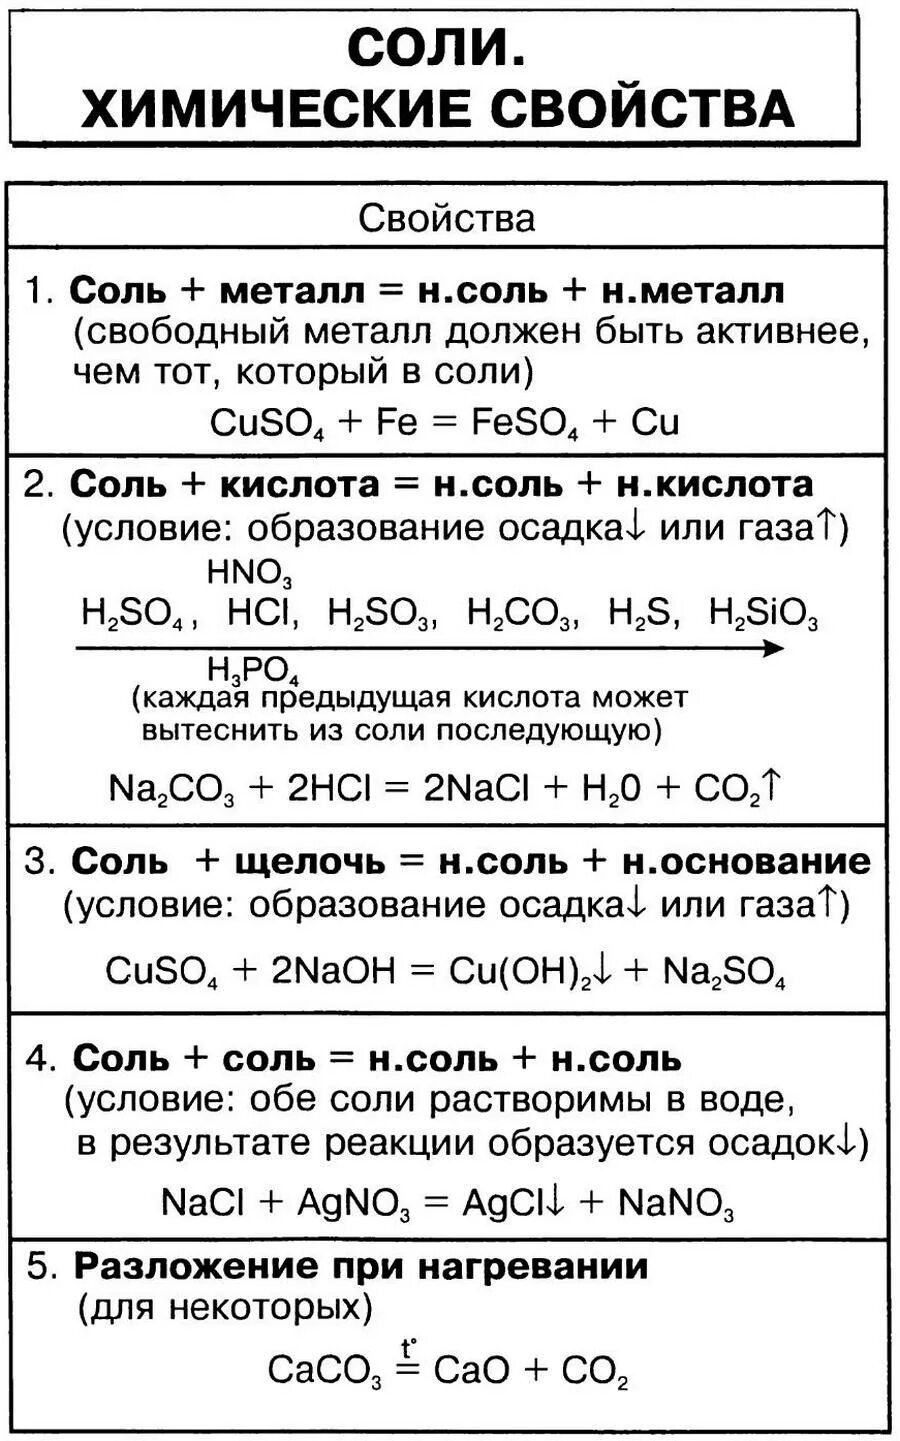 Соли в химии реакции. Химические свойства солей 8 класс химия таблица. Свойства солей химия 8 класс. Соли химические свойства 8 класс таблица. Химические свойства солей 8 класс.